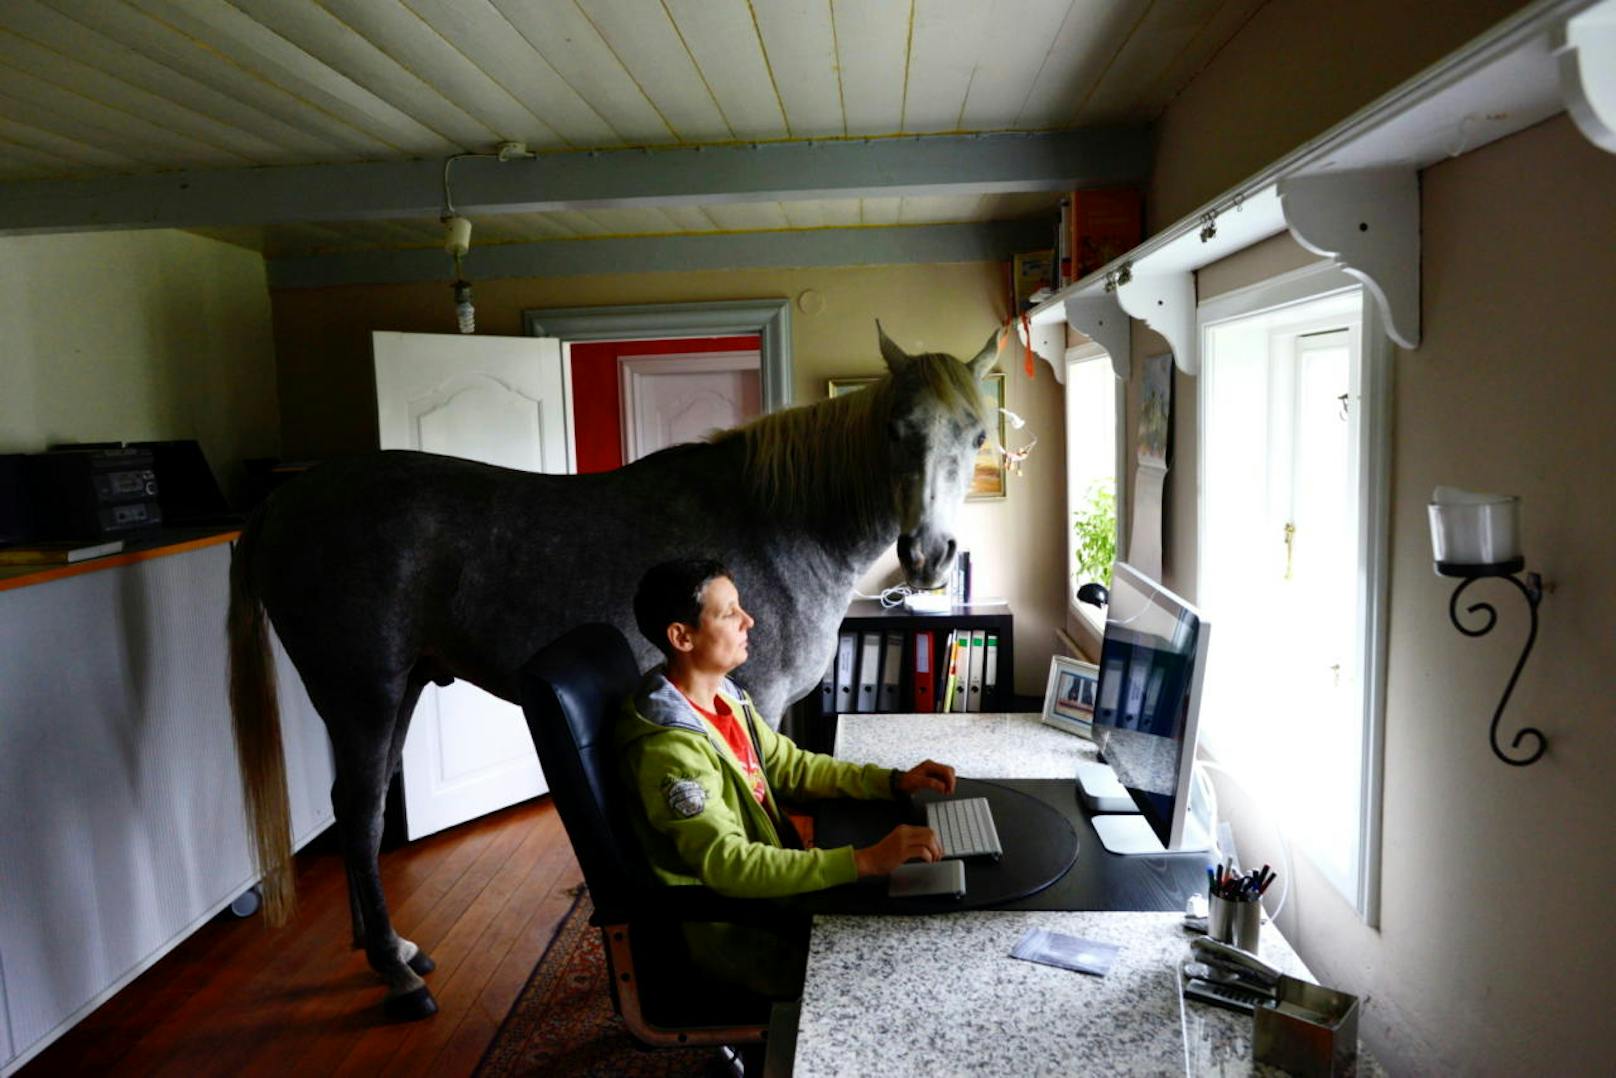 <b>Homeoffice mit Hauspferd!</b> "Mein Pferd Nasar und ich vertieft bei der Arbeit im Homeoffice :) "